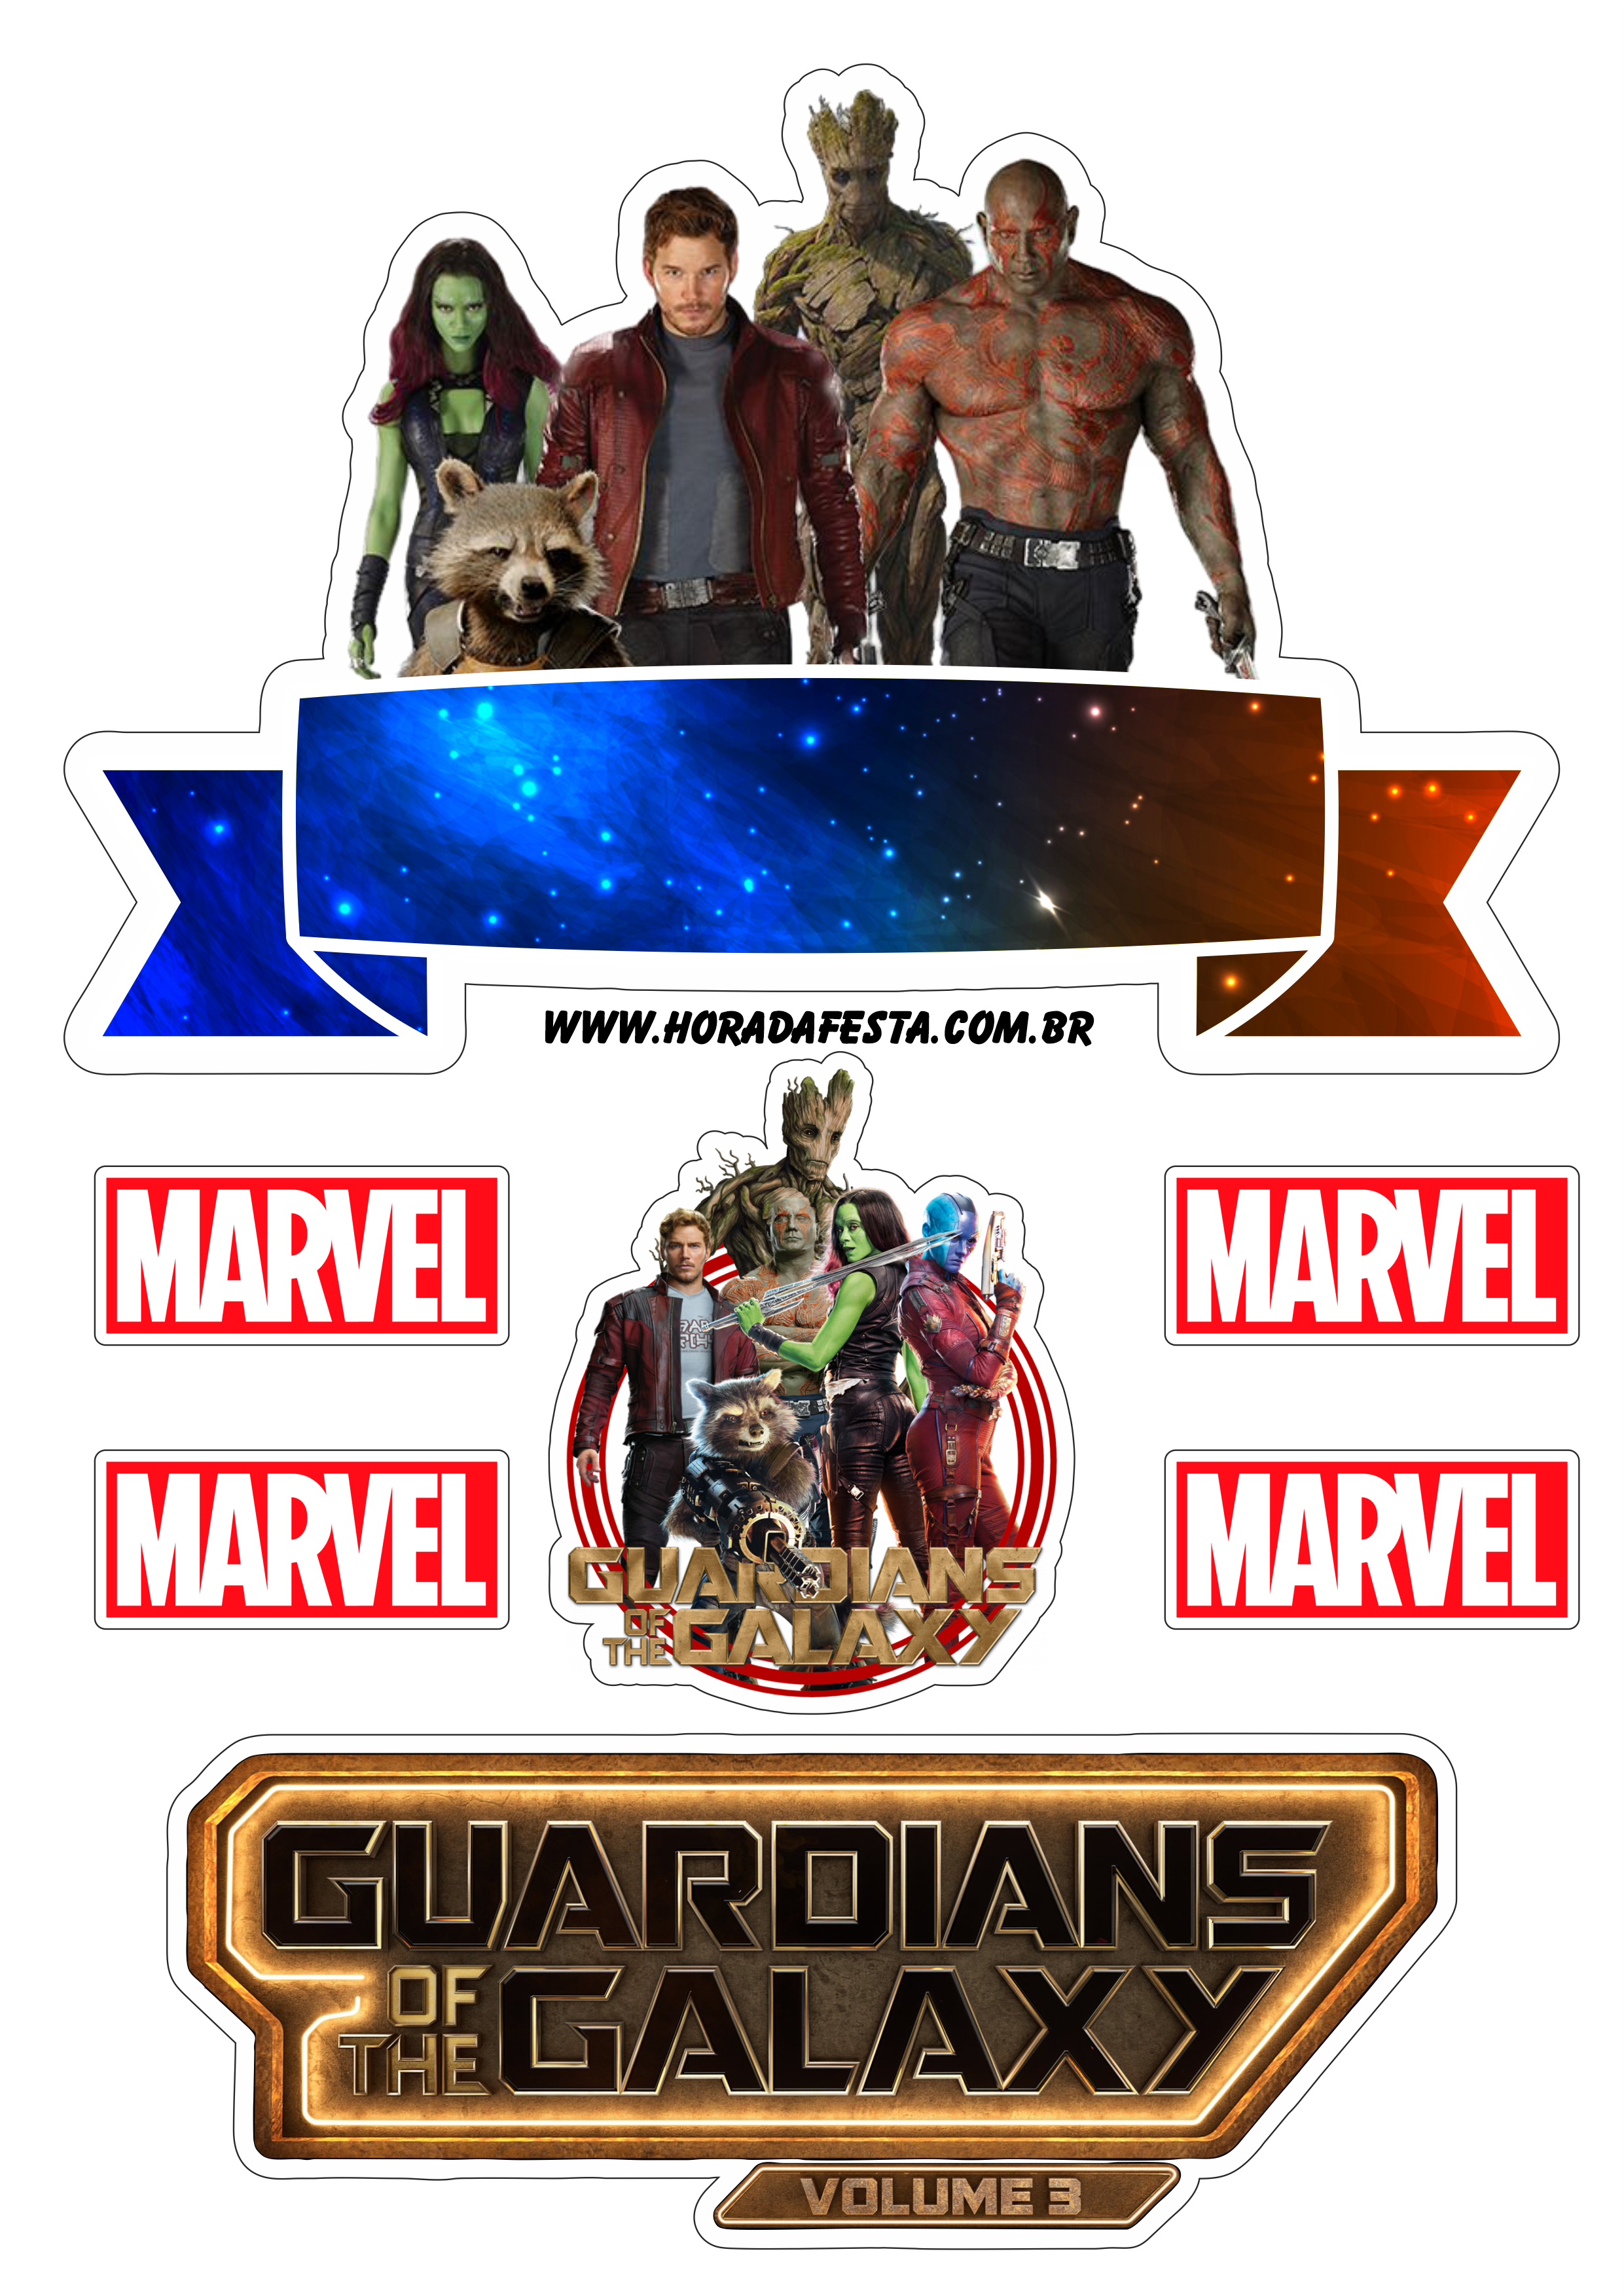 Guardiões da galáxia volume 3 topo de bolo decoração de festa universo Marvel png